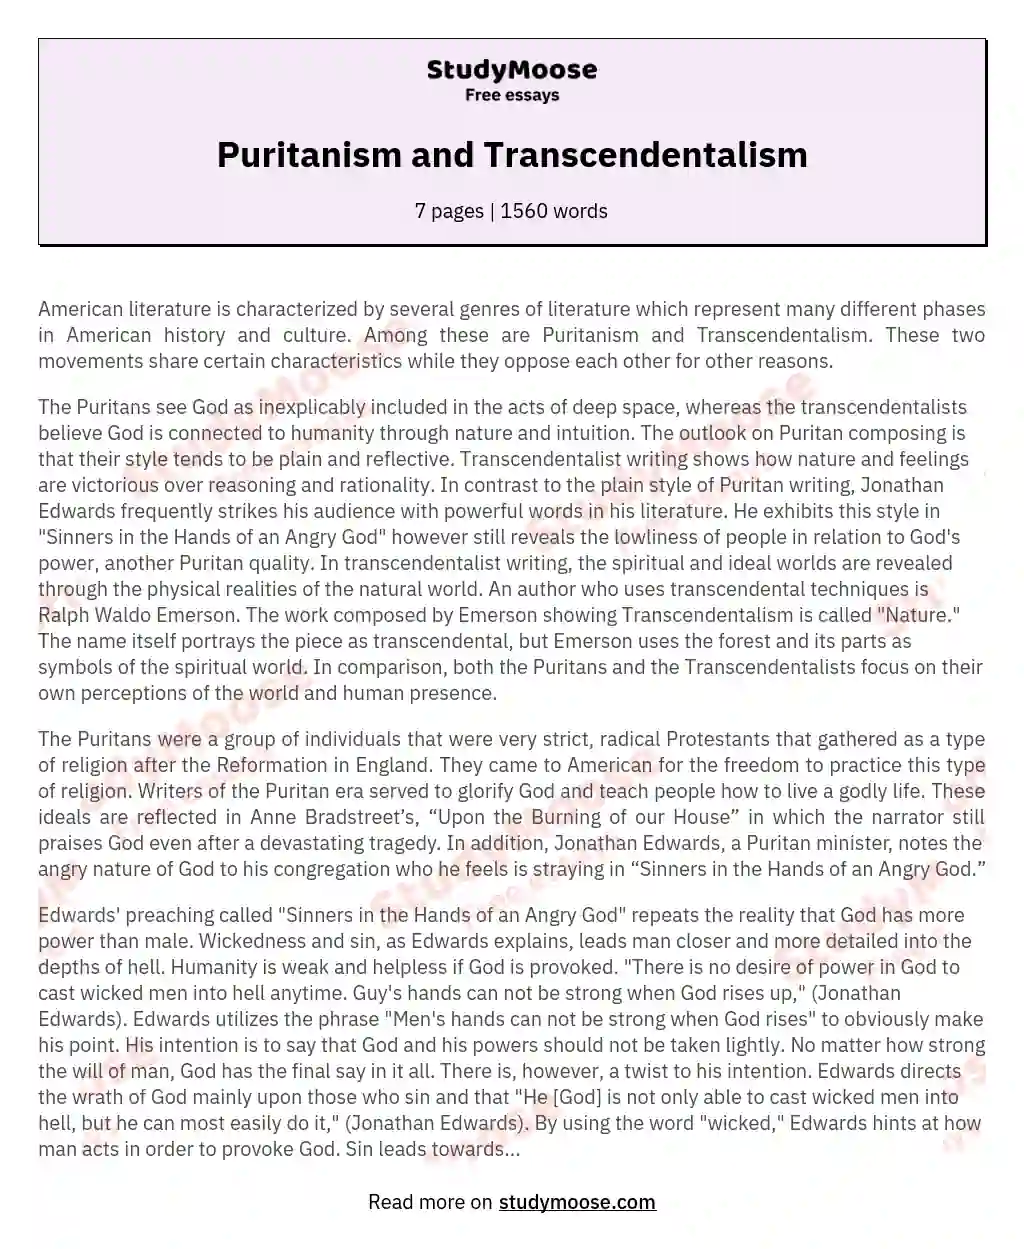 Puritanism and Transcendentalism